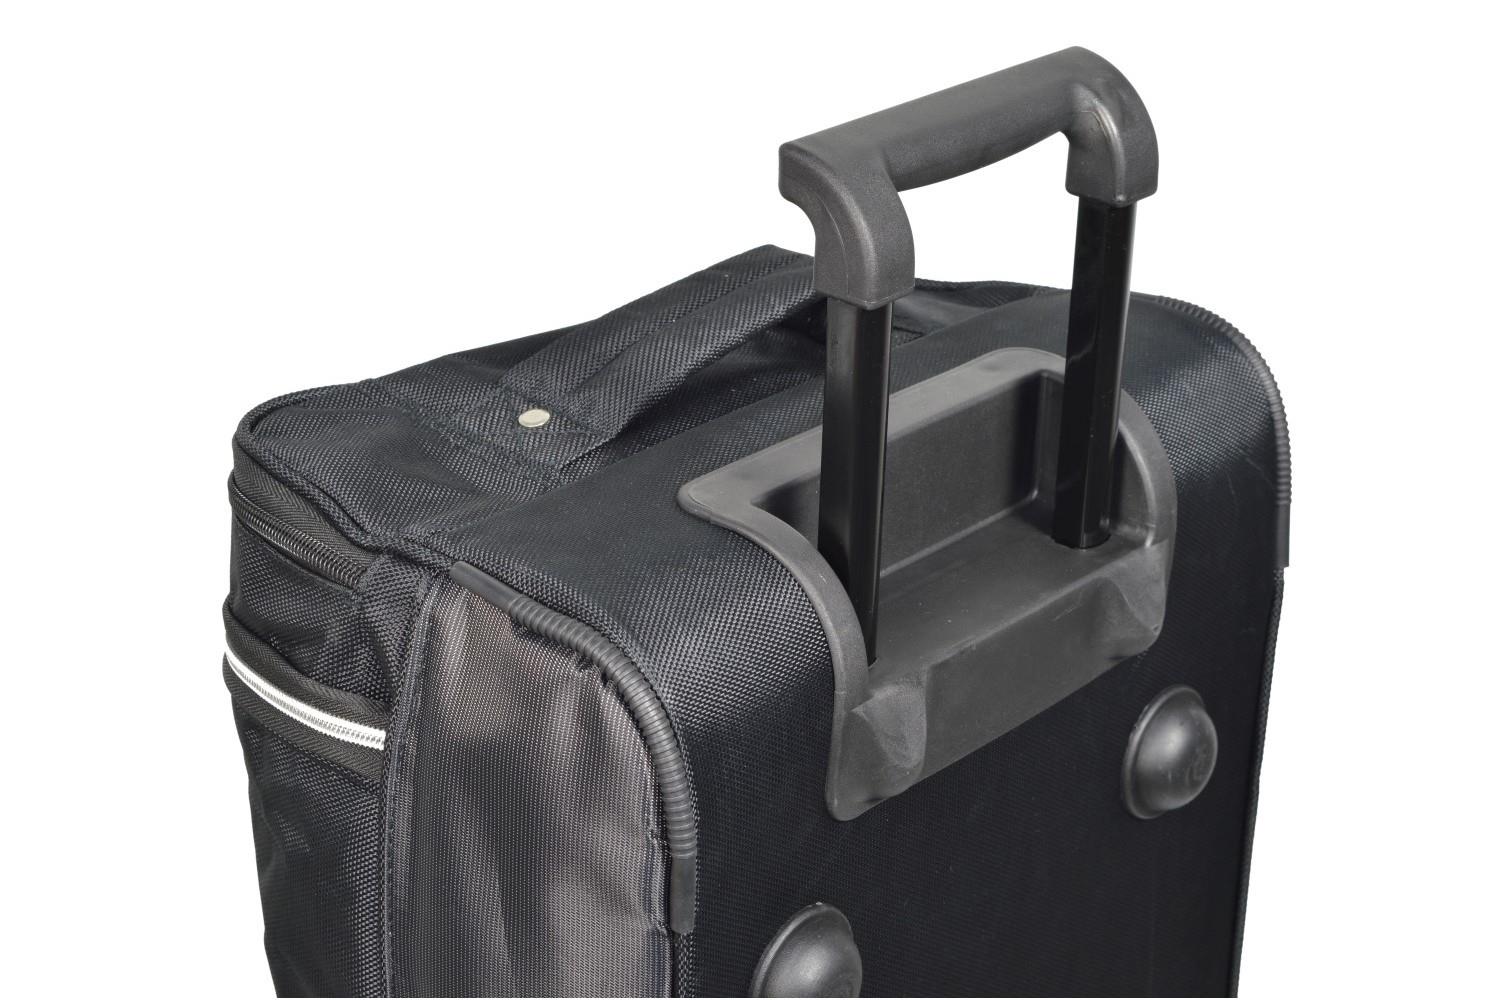 Skoda Superb III (3V) 2015-present 5d Car-Bags travel bags